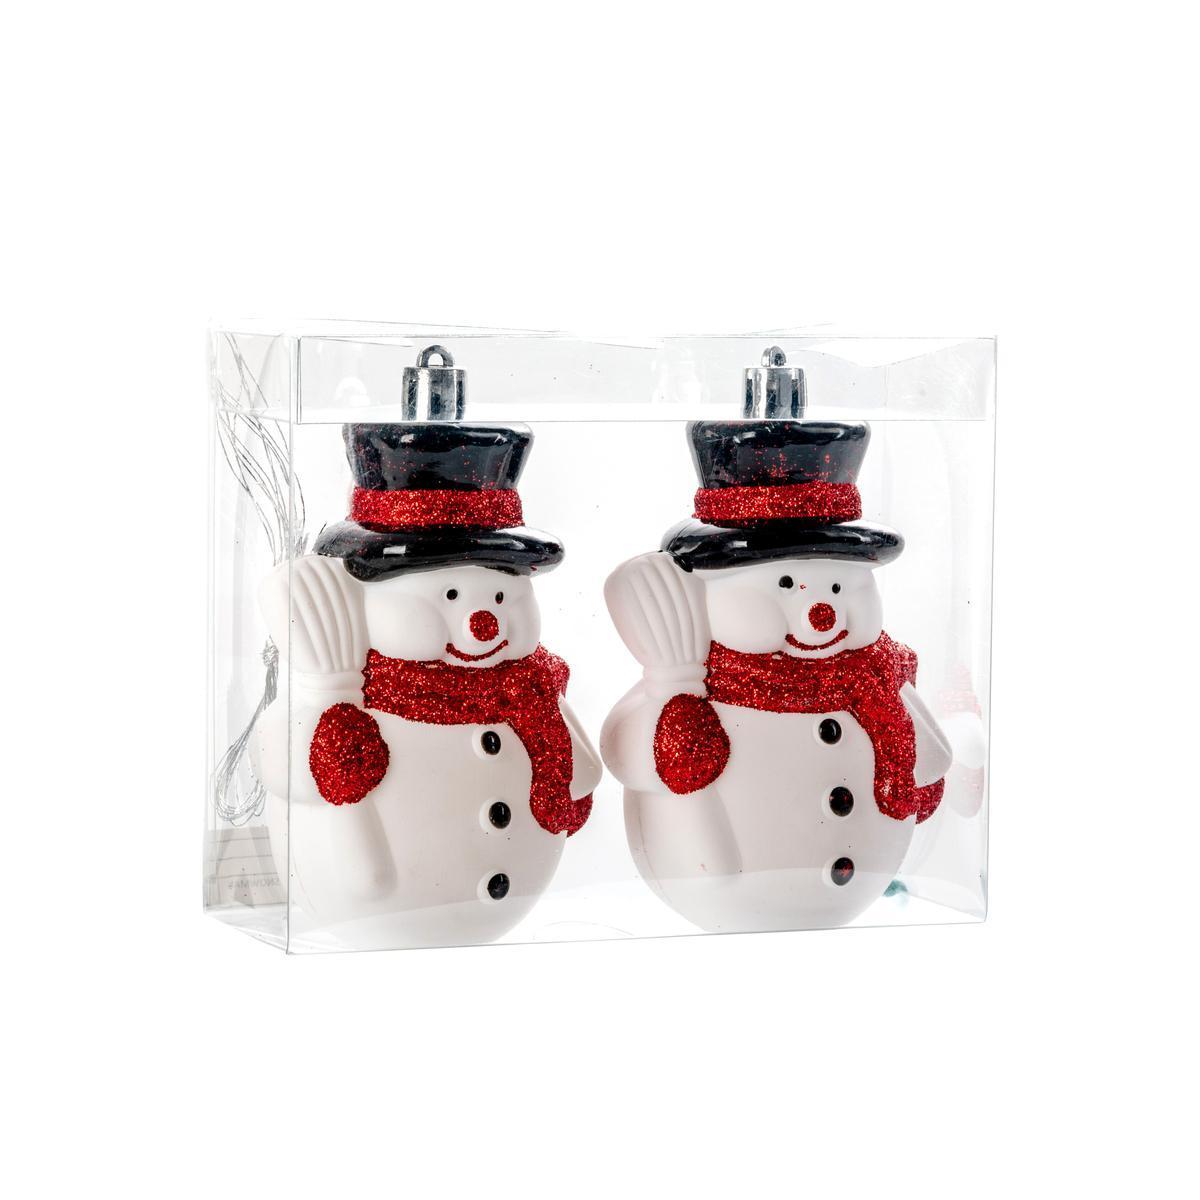 2 suspensions Bonhommes de neige - 6 x 5 x H 10.5 cm - Blanc, rouge, noir